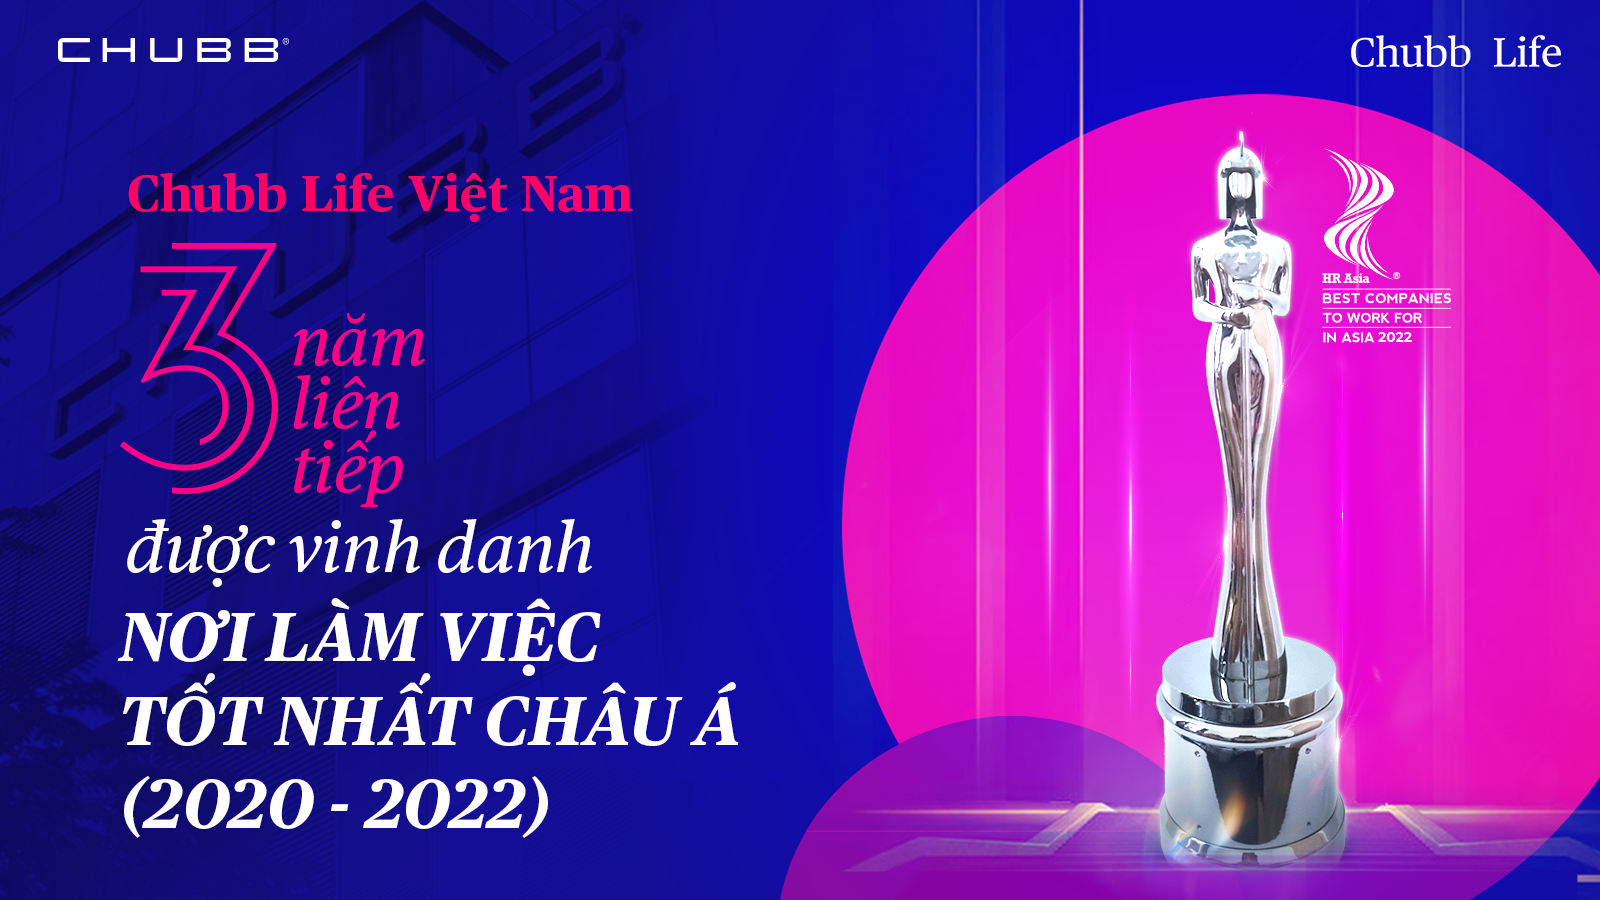 Chubb Life Việt Nam được vinh danh với 2 giải thưởng lớn châu Á trên lĩnh vực nhân sự lẫn công nghệ - 1